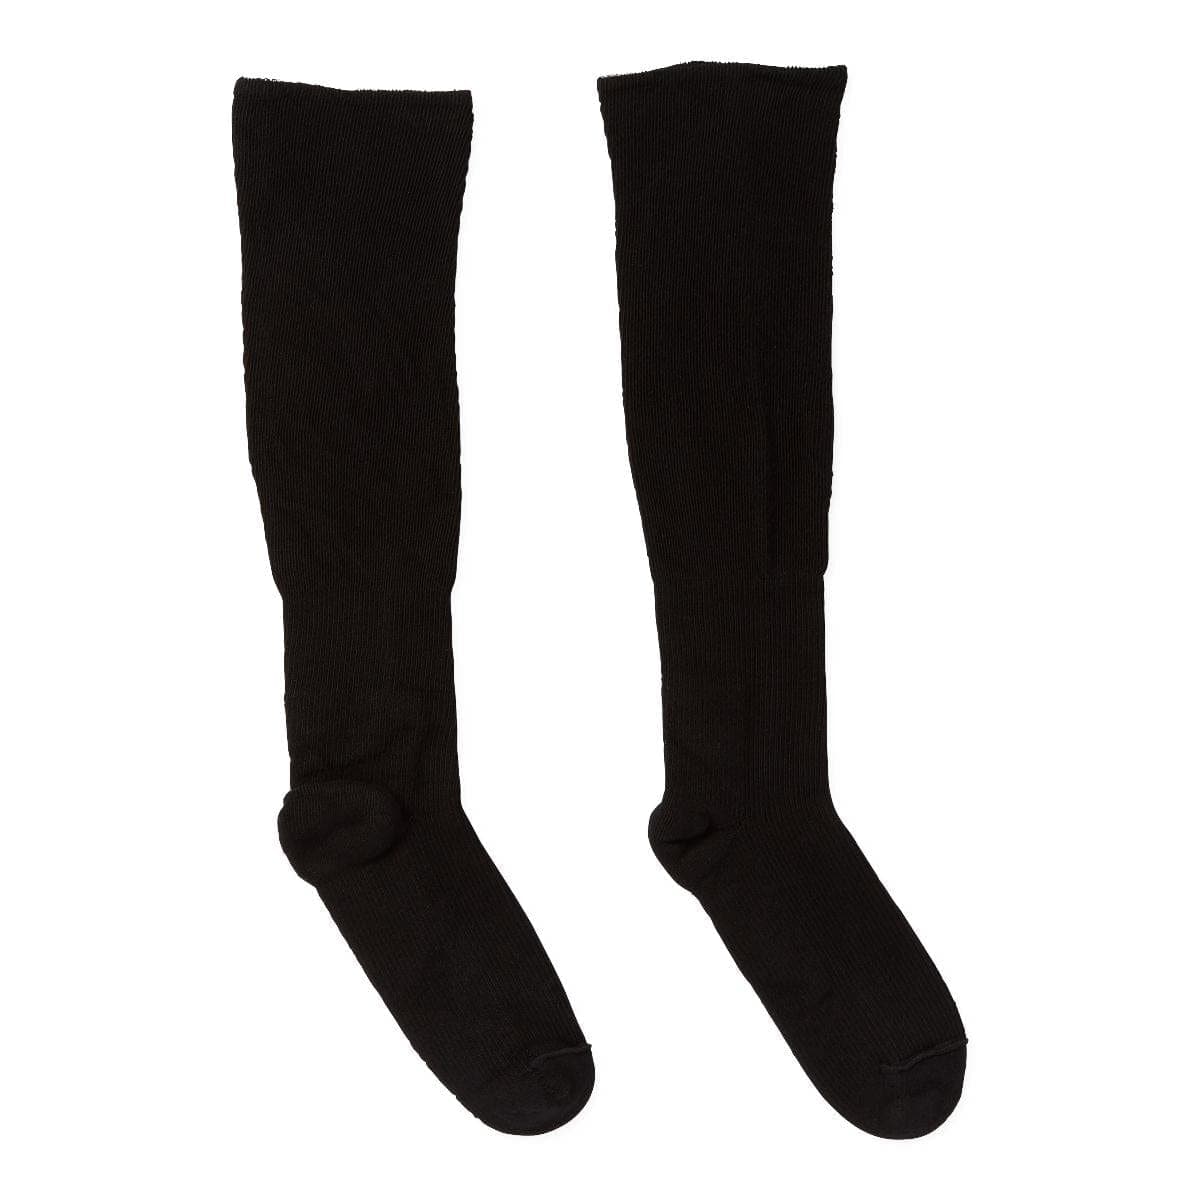 Medline LG Medline COMPRECARES Liner Socks